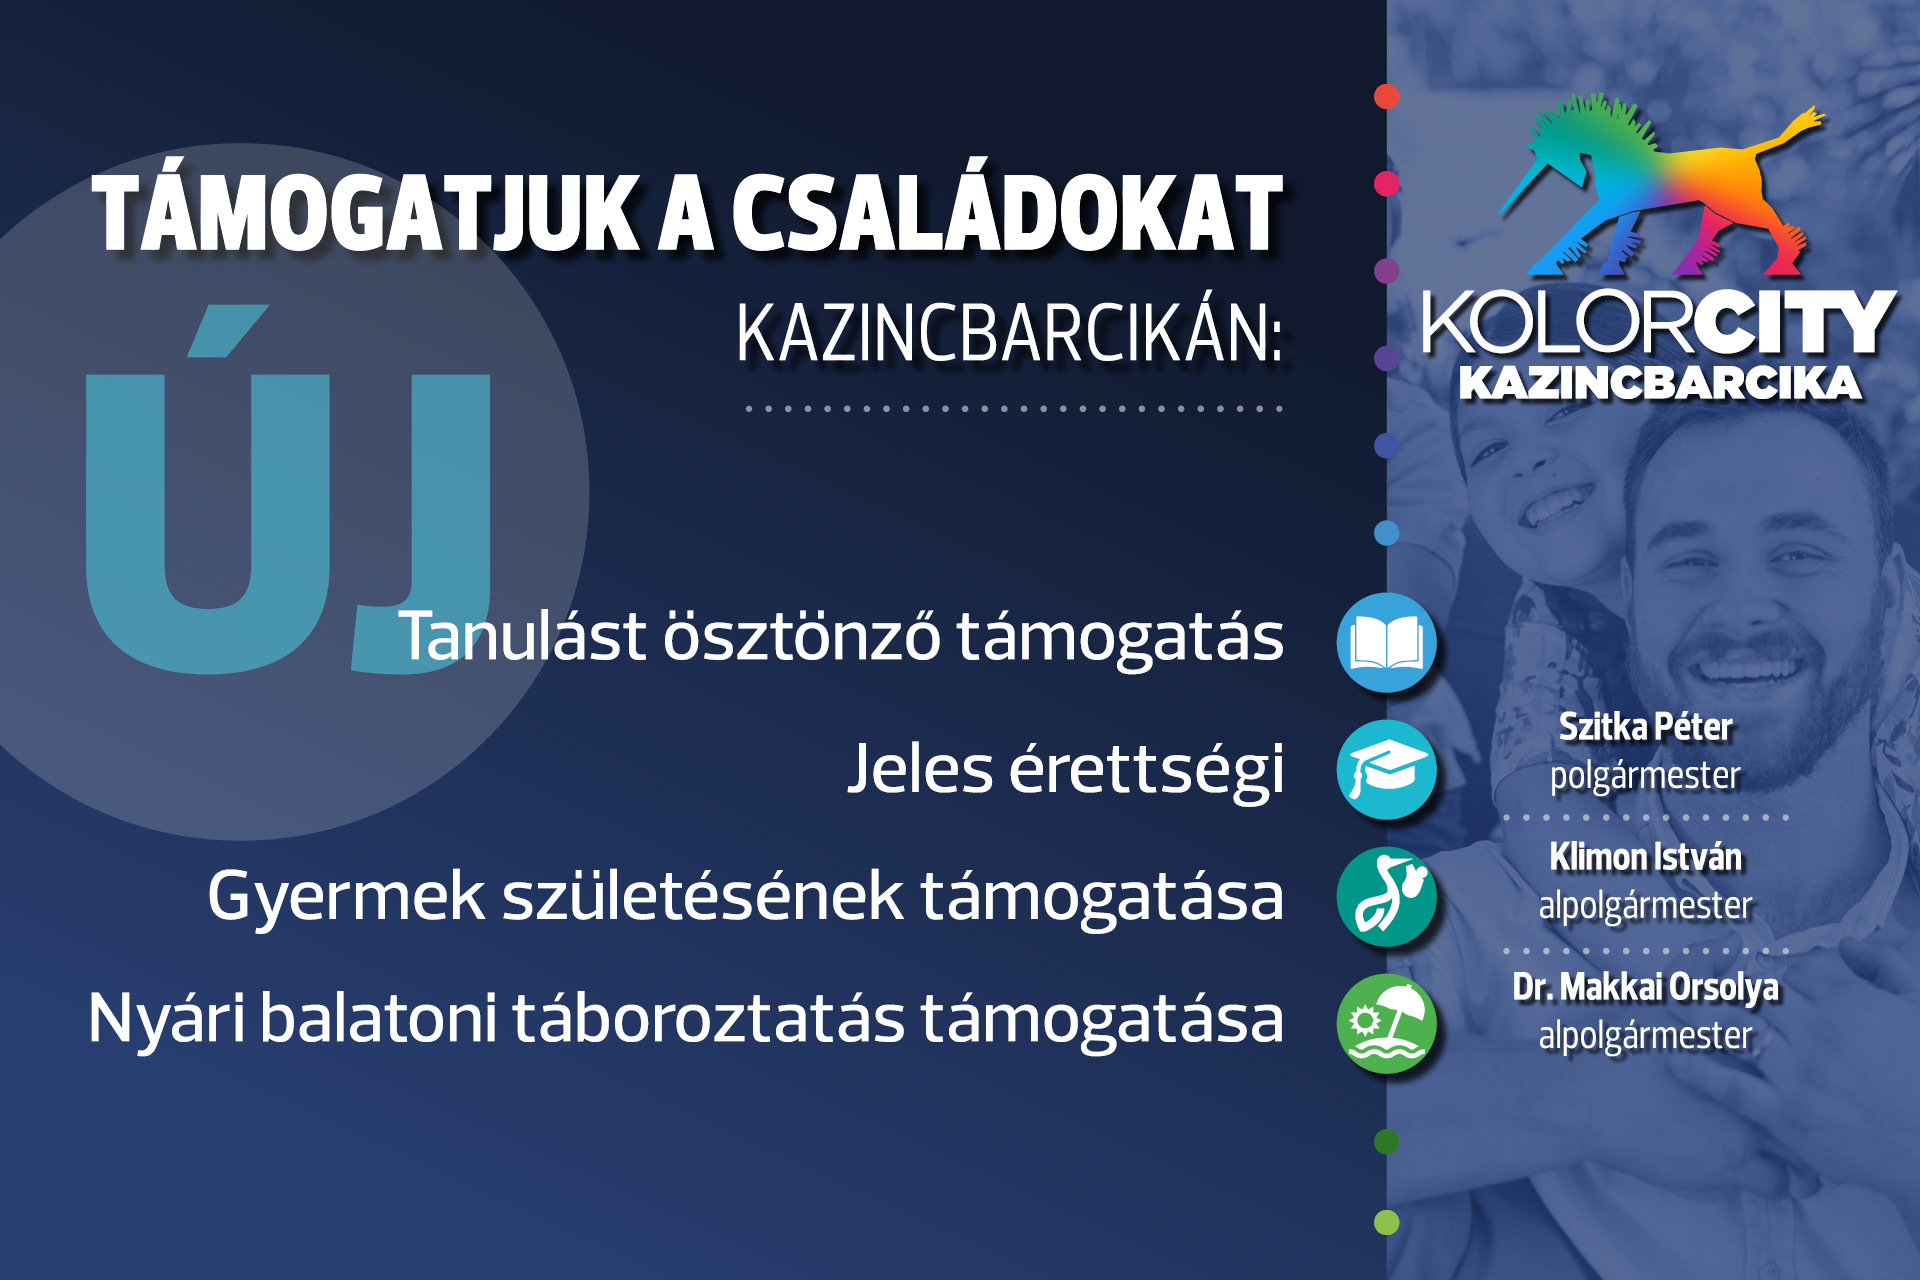 https://kolorline.hu/Újabb családtámogatási intézkedések Kazincbarcikán